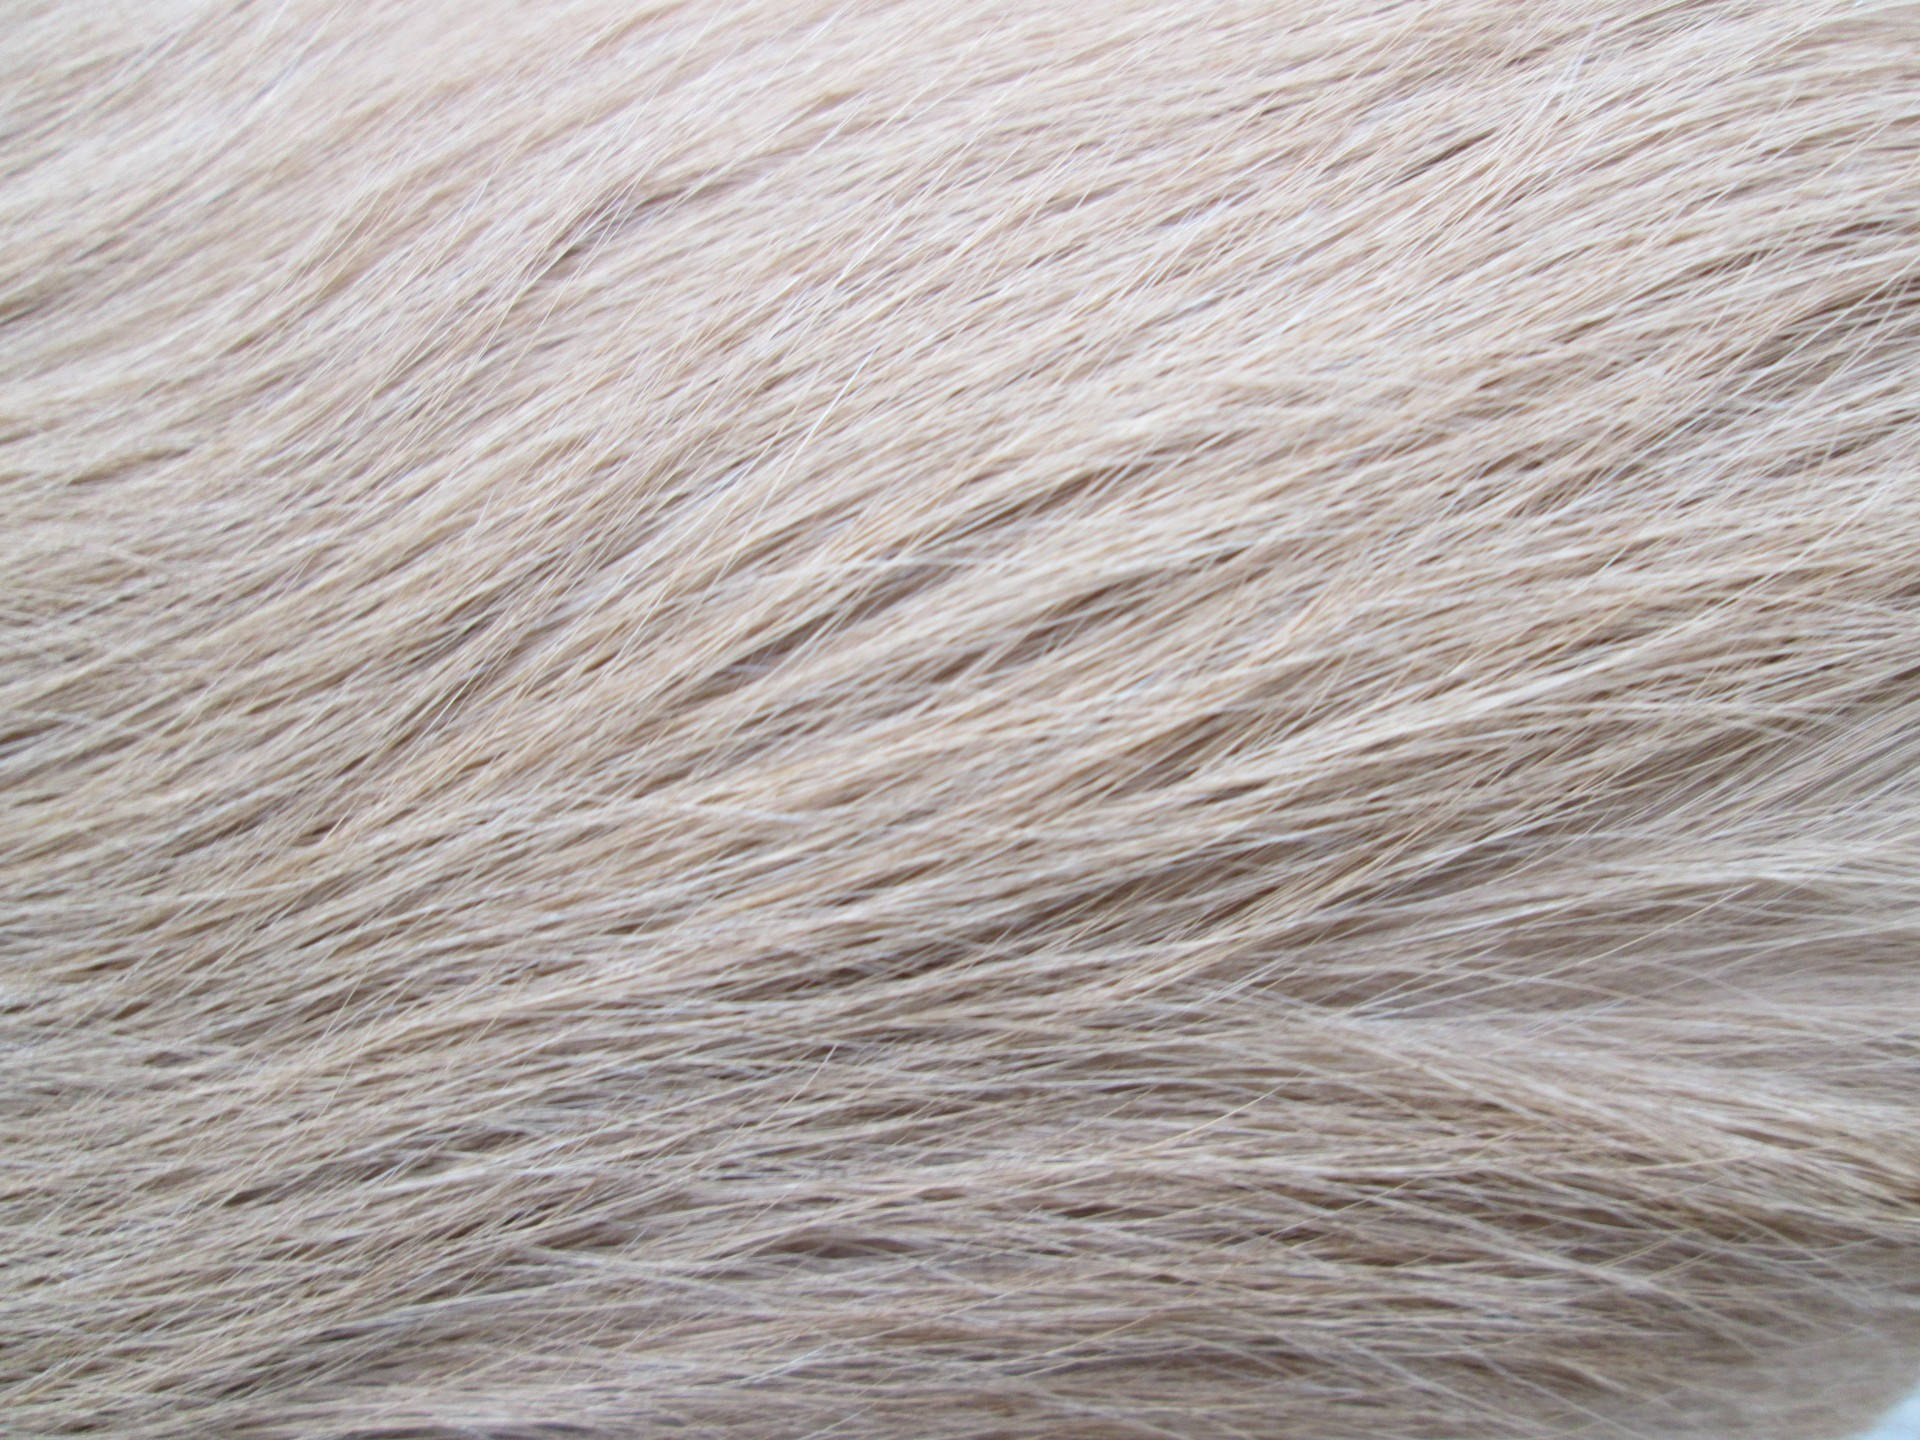 Pale White Animal Fur